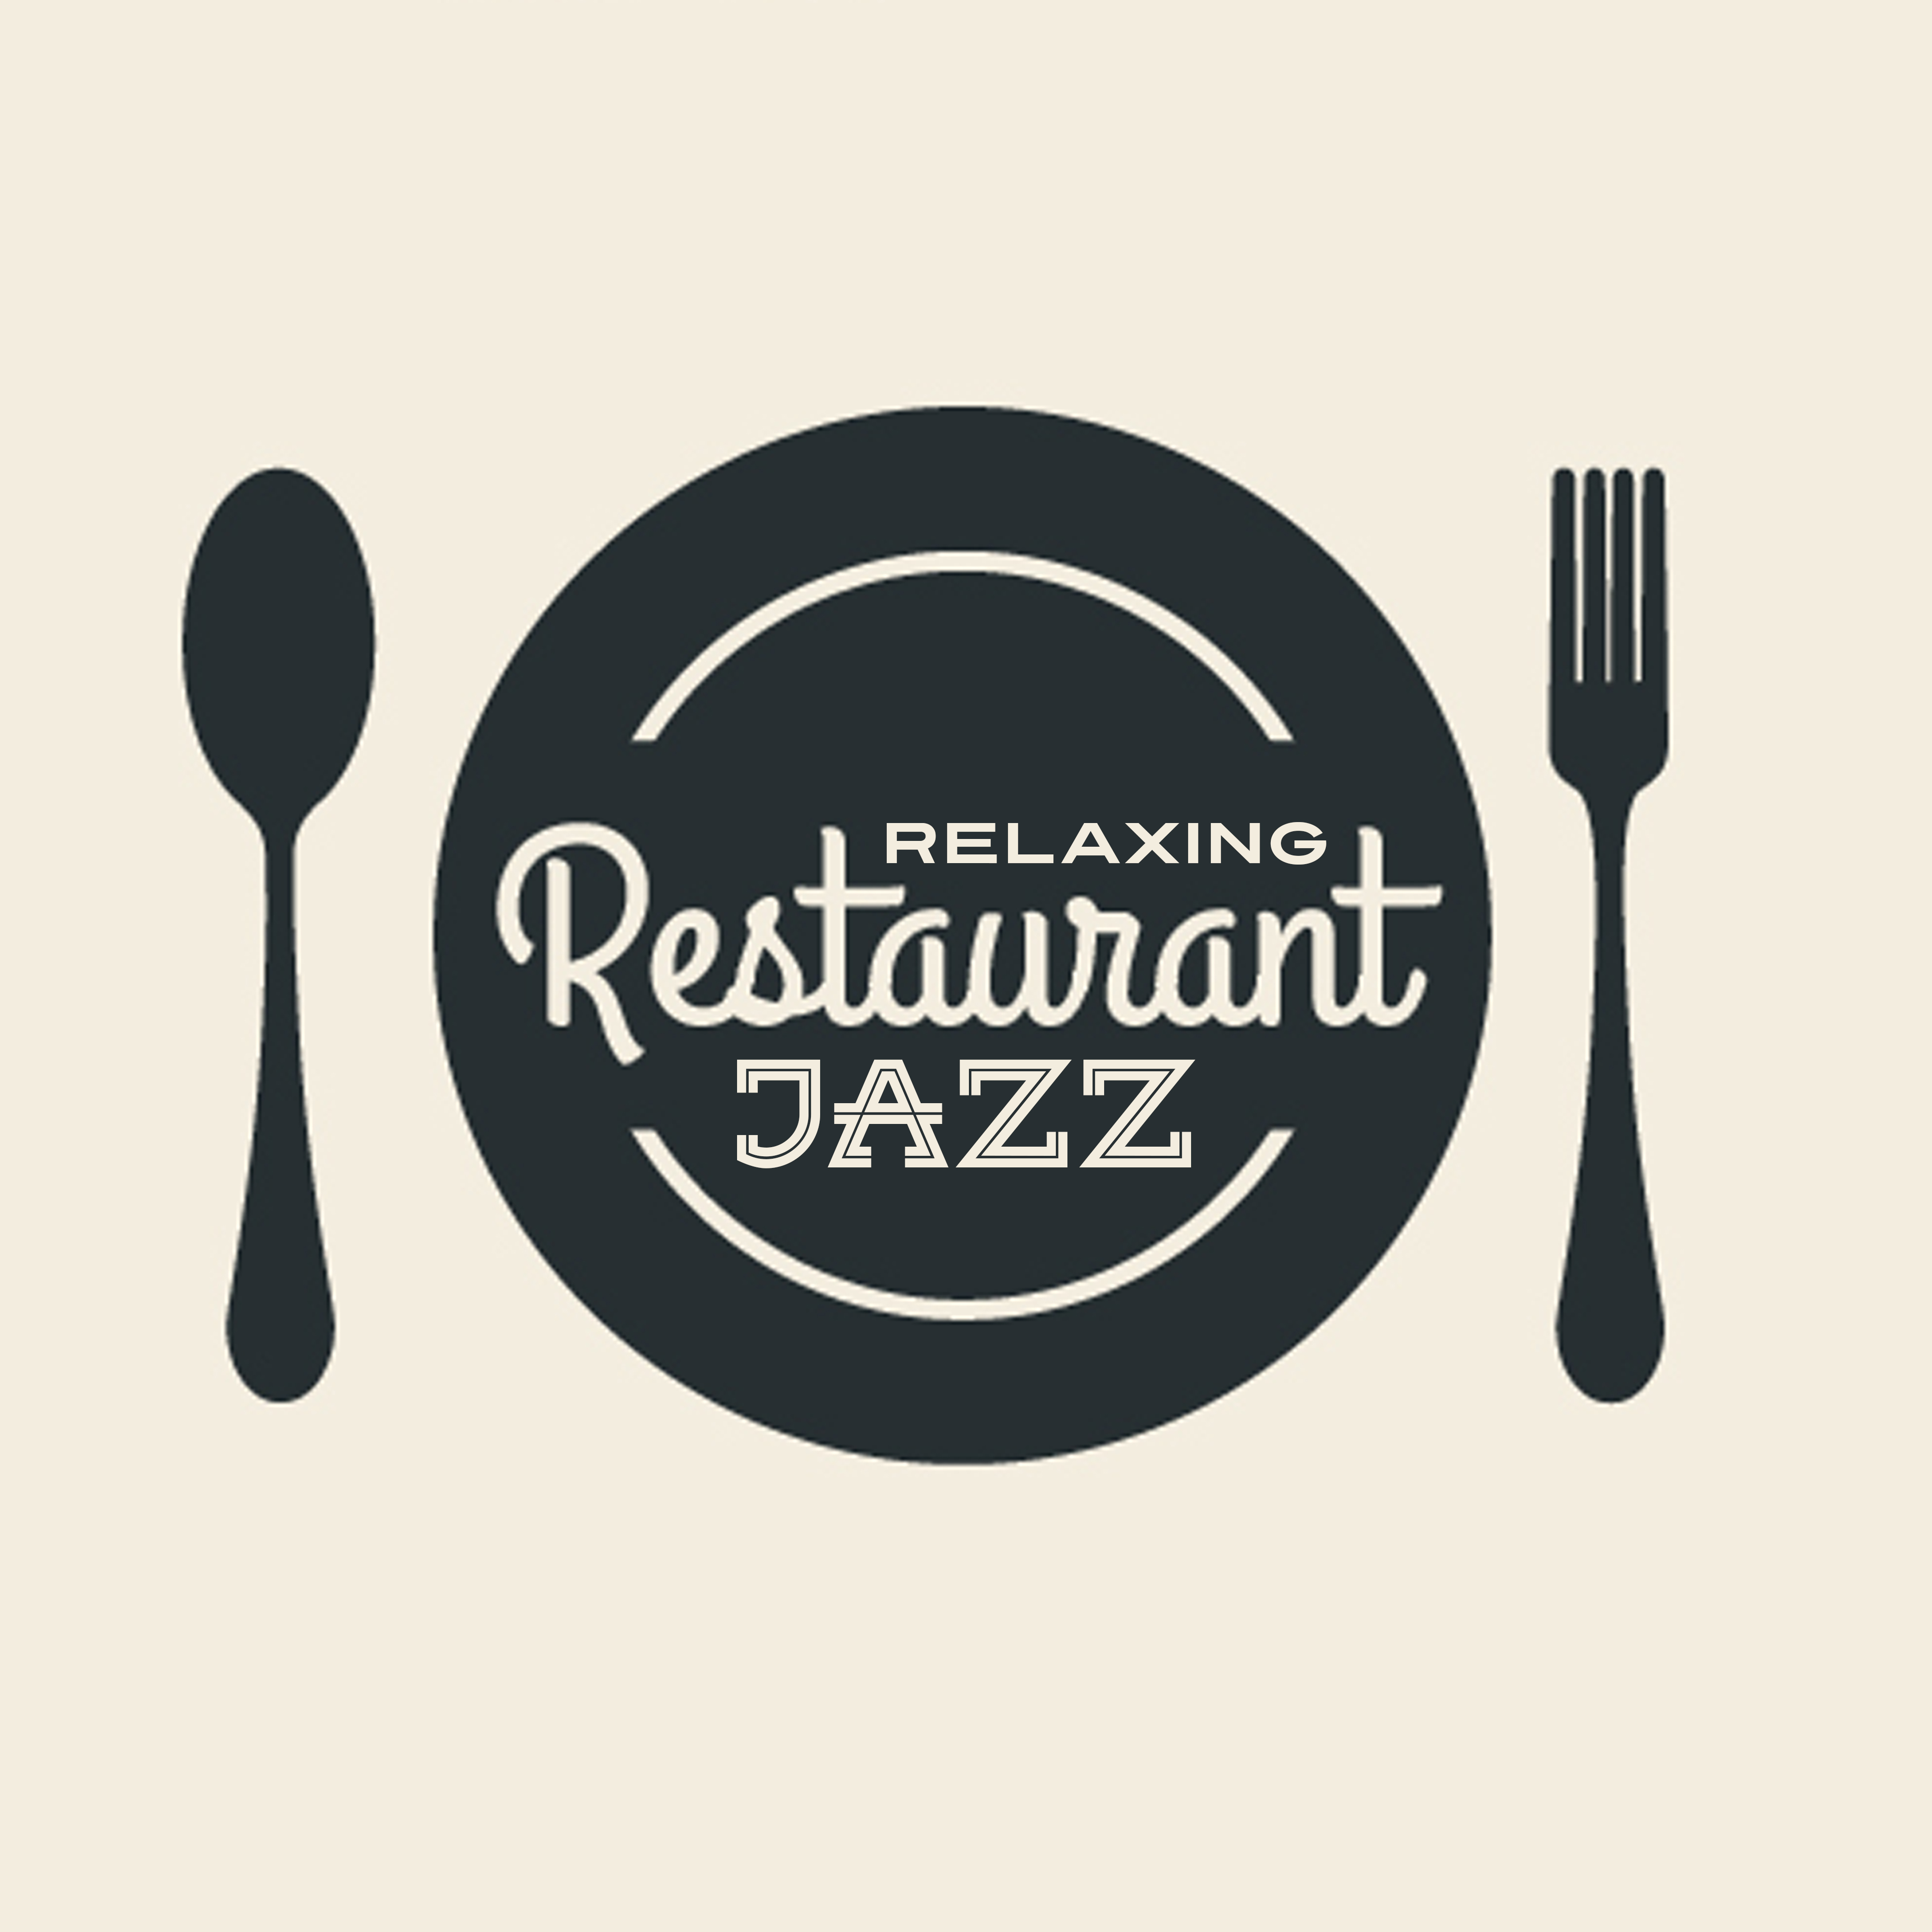 Relaxing Restaurant Jazz